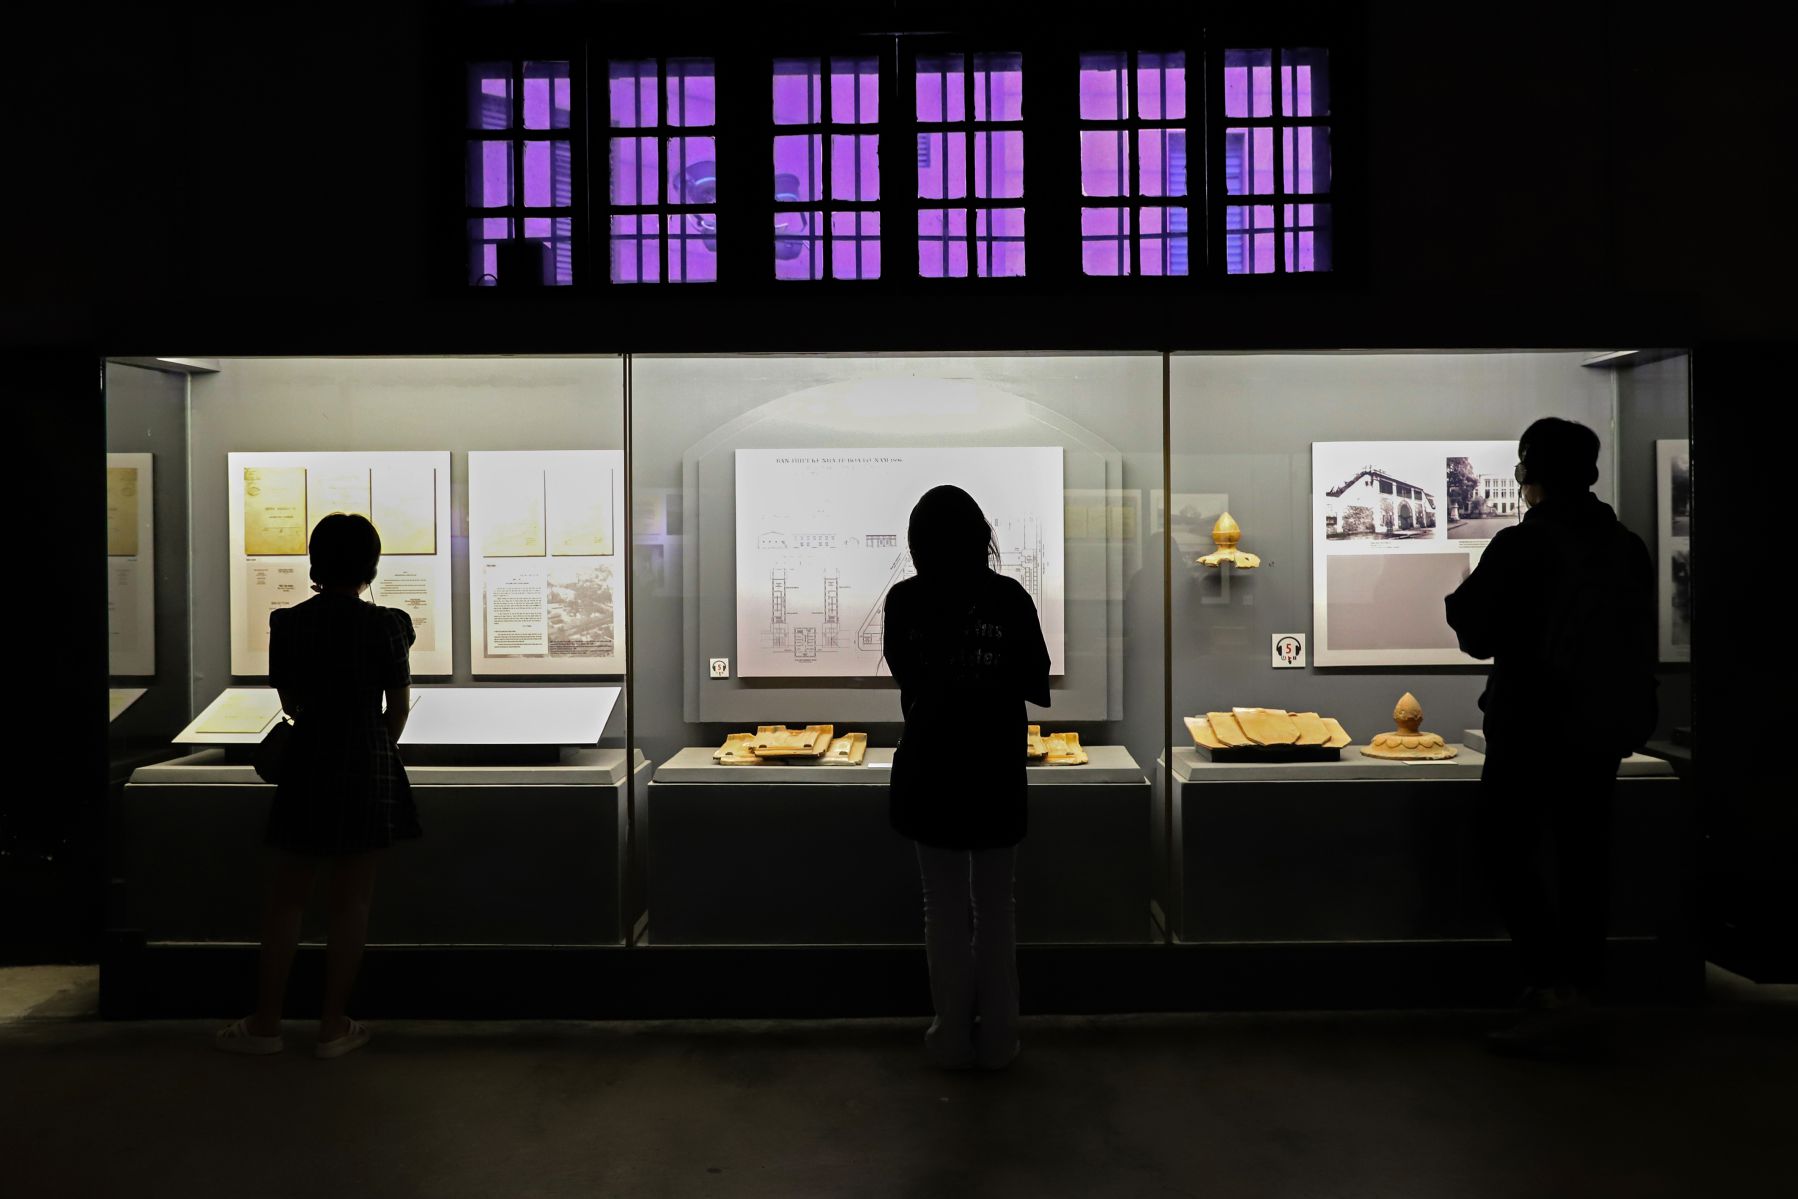 Bên trong Khu di tích Nhà tù Hỏa Lò, ánh sáng luôn duy trì ở mức yếu để khách tham quan tập trung quan sát được các hiện vật đang trưng bày. Ảnh: Tô Thế